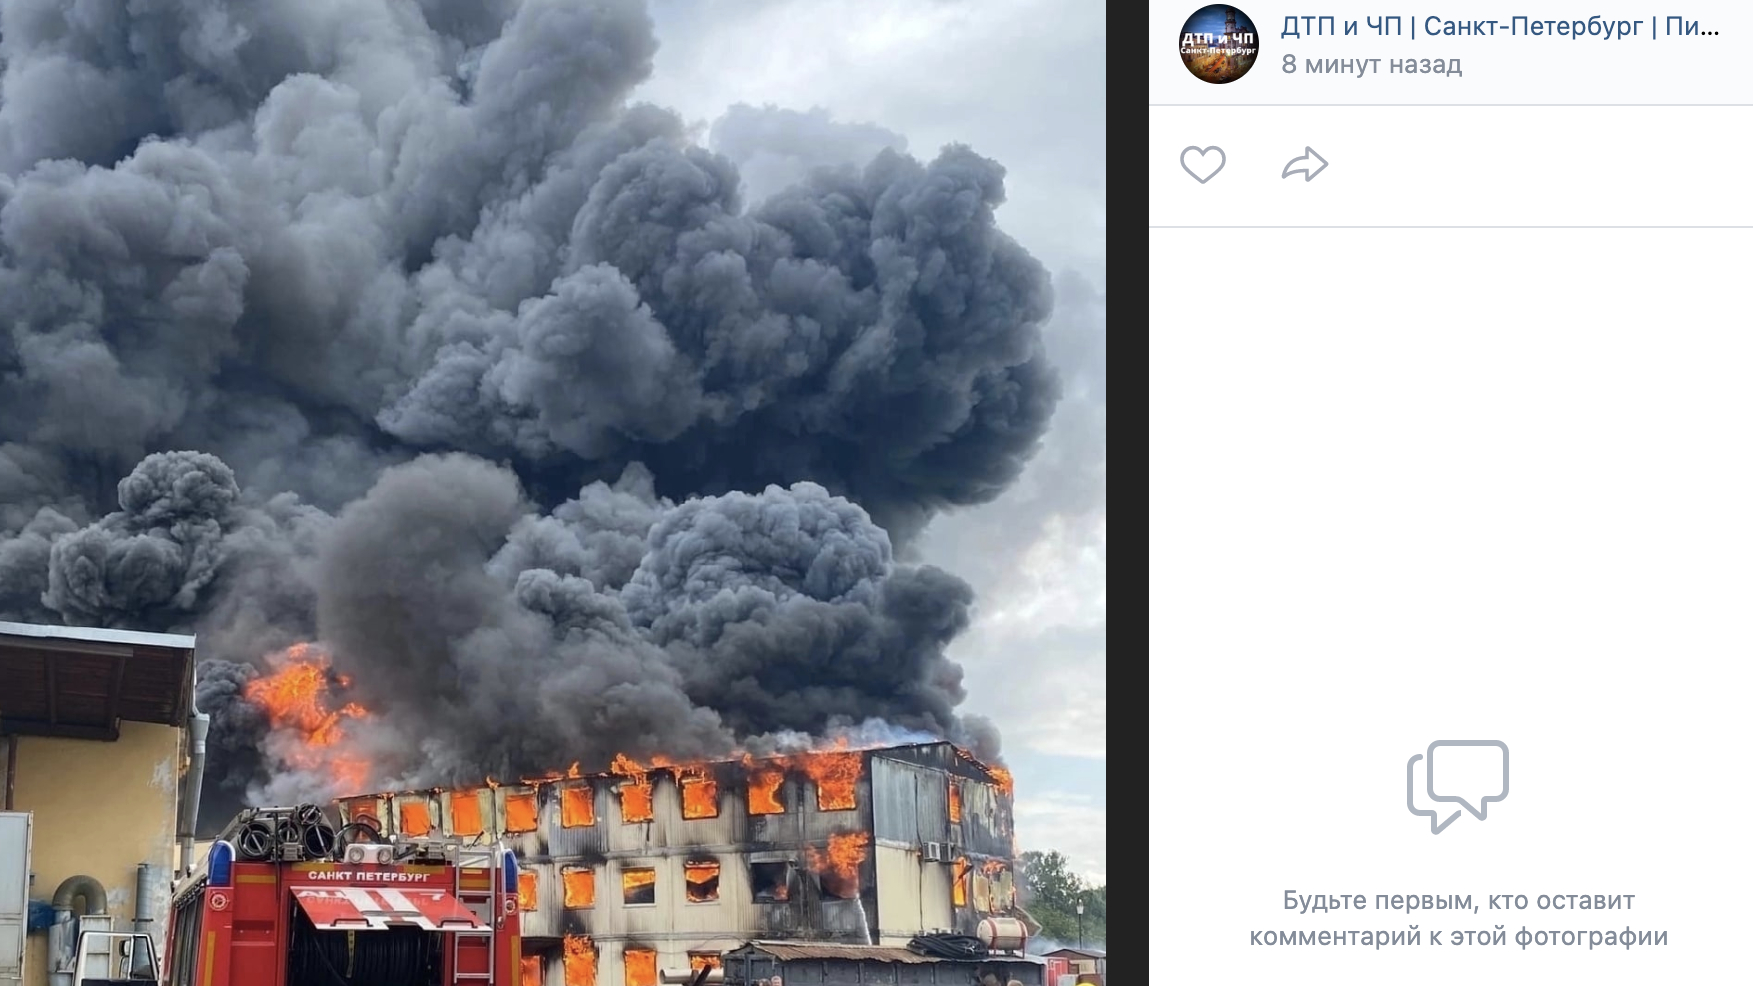 Пострадавшая от пожара на Днепропетровской находится в крайне тяжелом состоянии